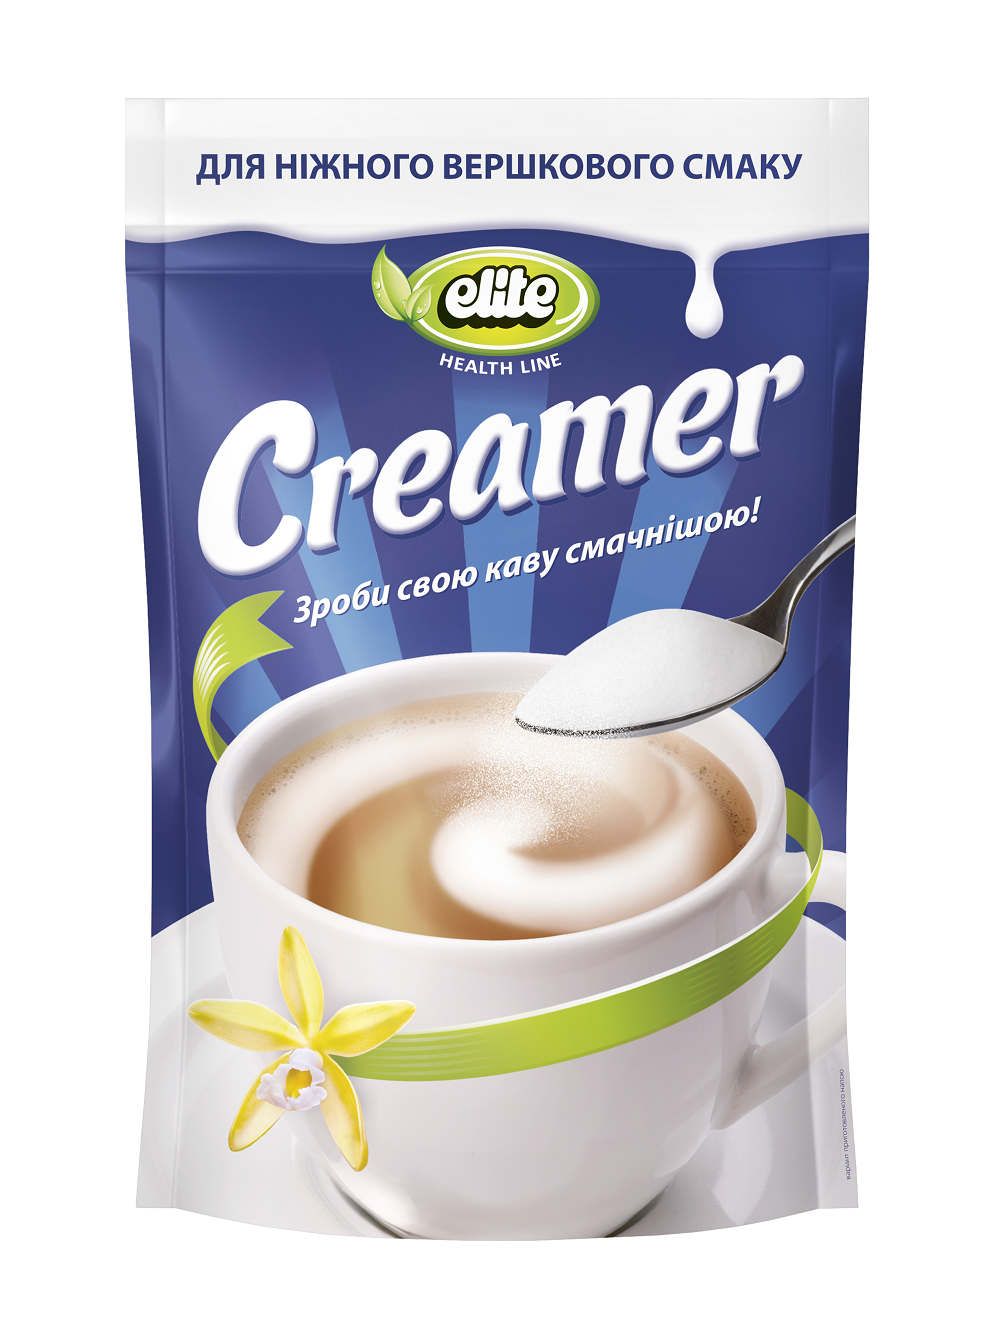 Cream substitute Creamer ELITE HEALTH LINE